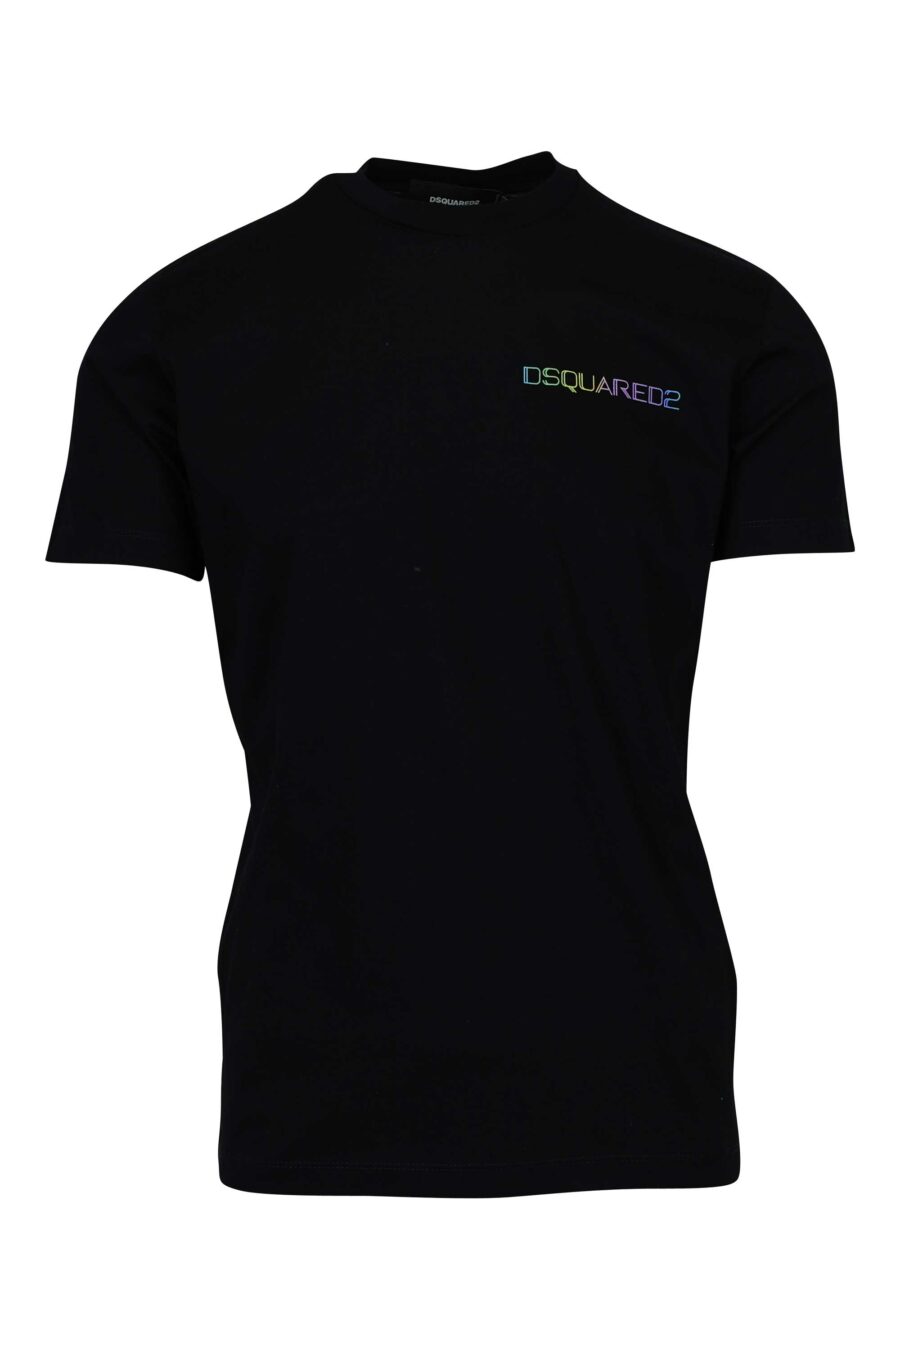 Camiseta negra con minilogo lateral multicolor - 8054148447649